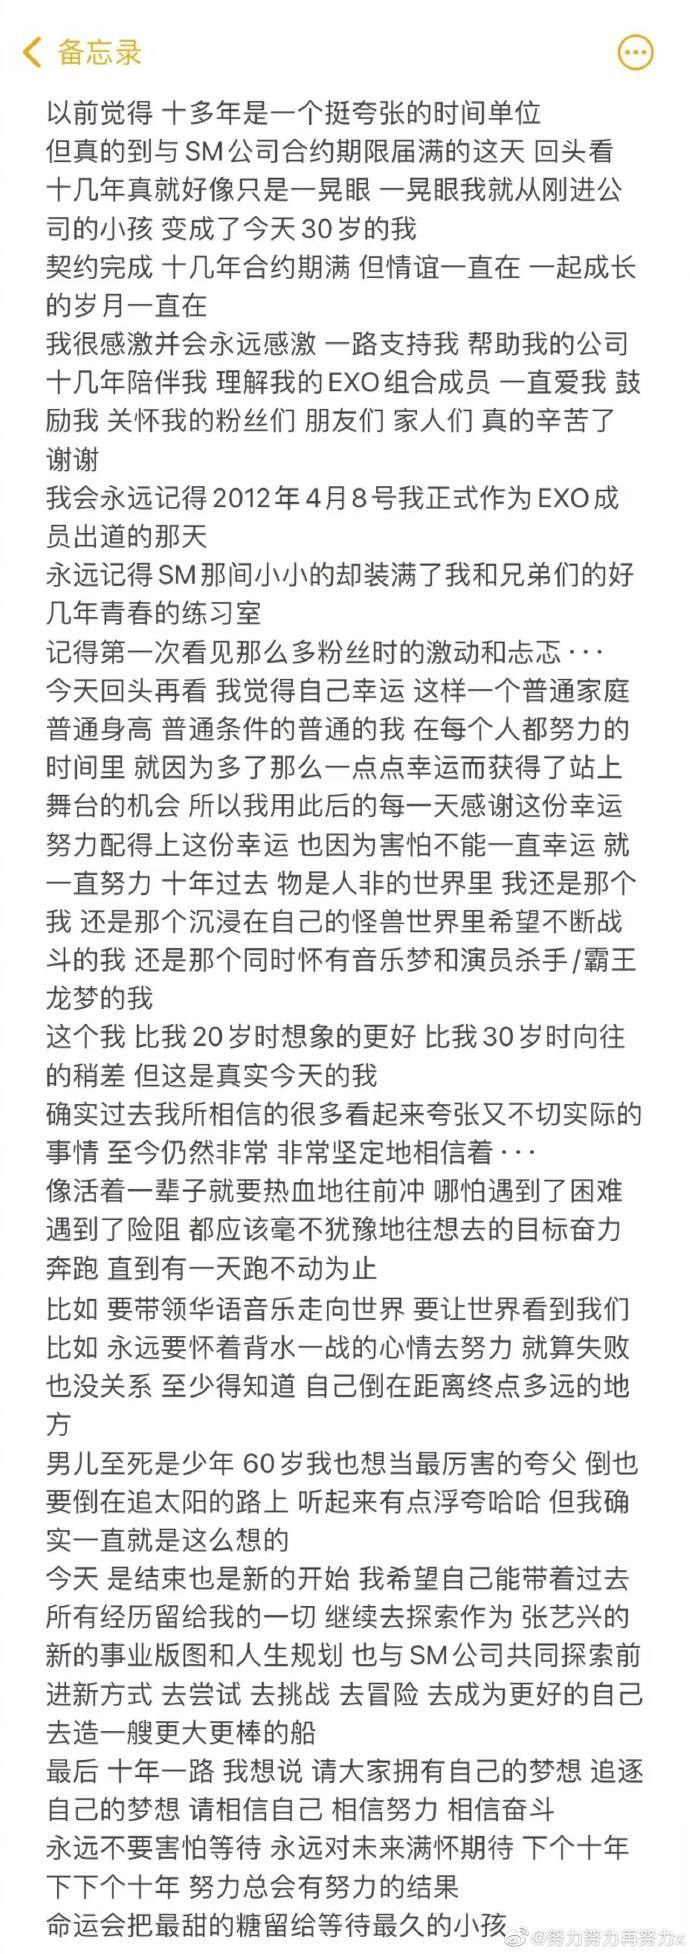 张艺兴宣布与SM公司合约到期 发长文回忆过往经历